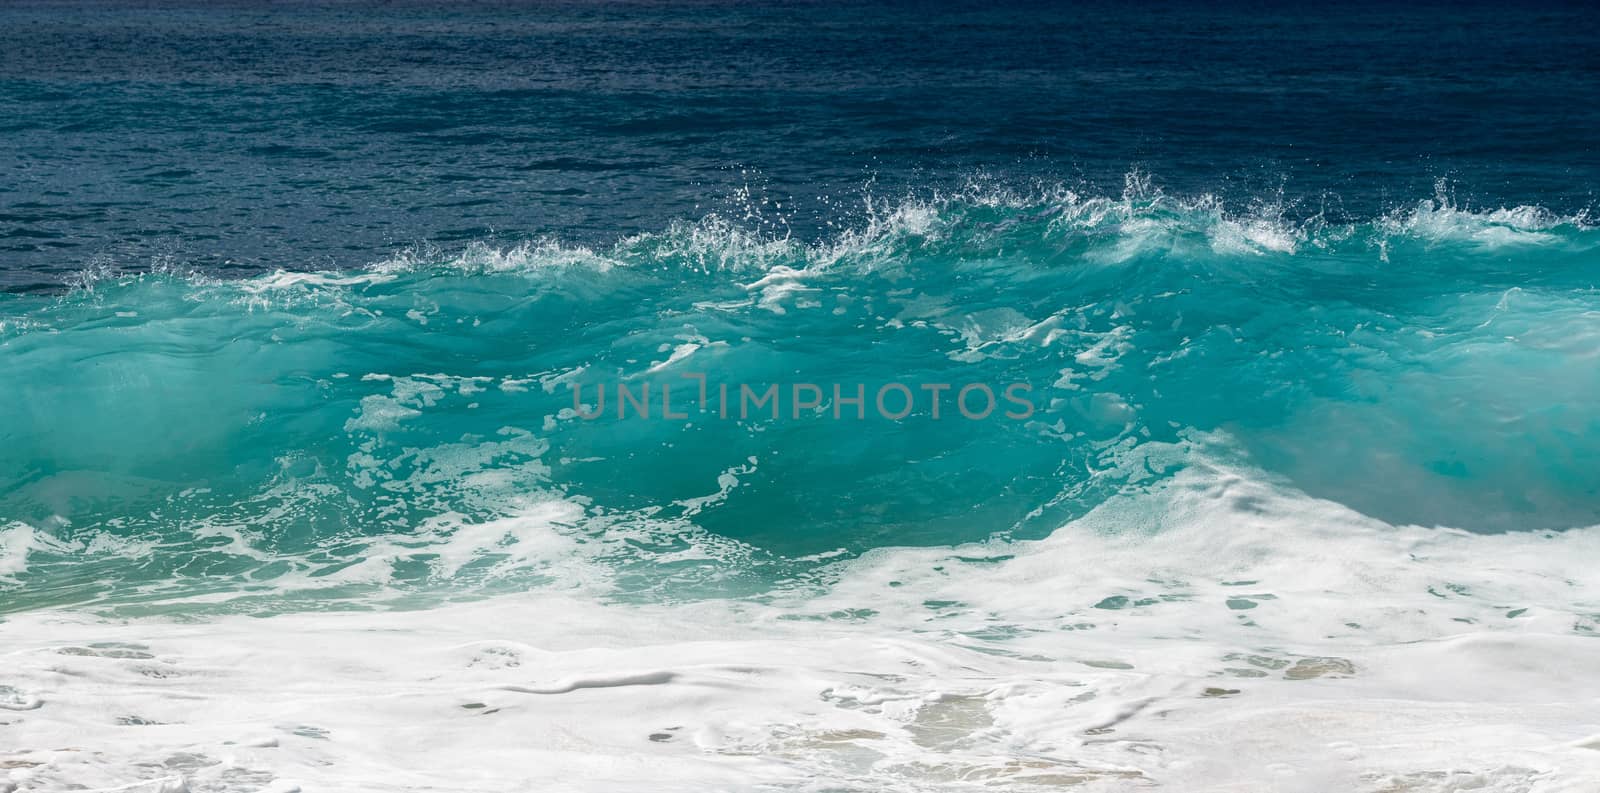 Winter waves frozen in fast shutter speed photo on west coast of Oahu by steheap